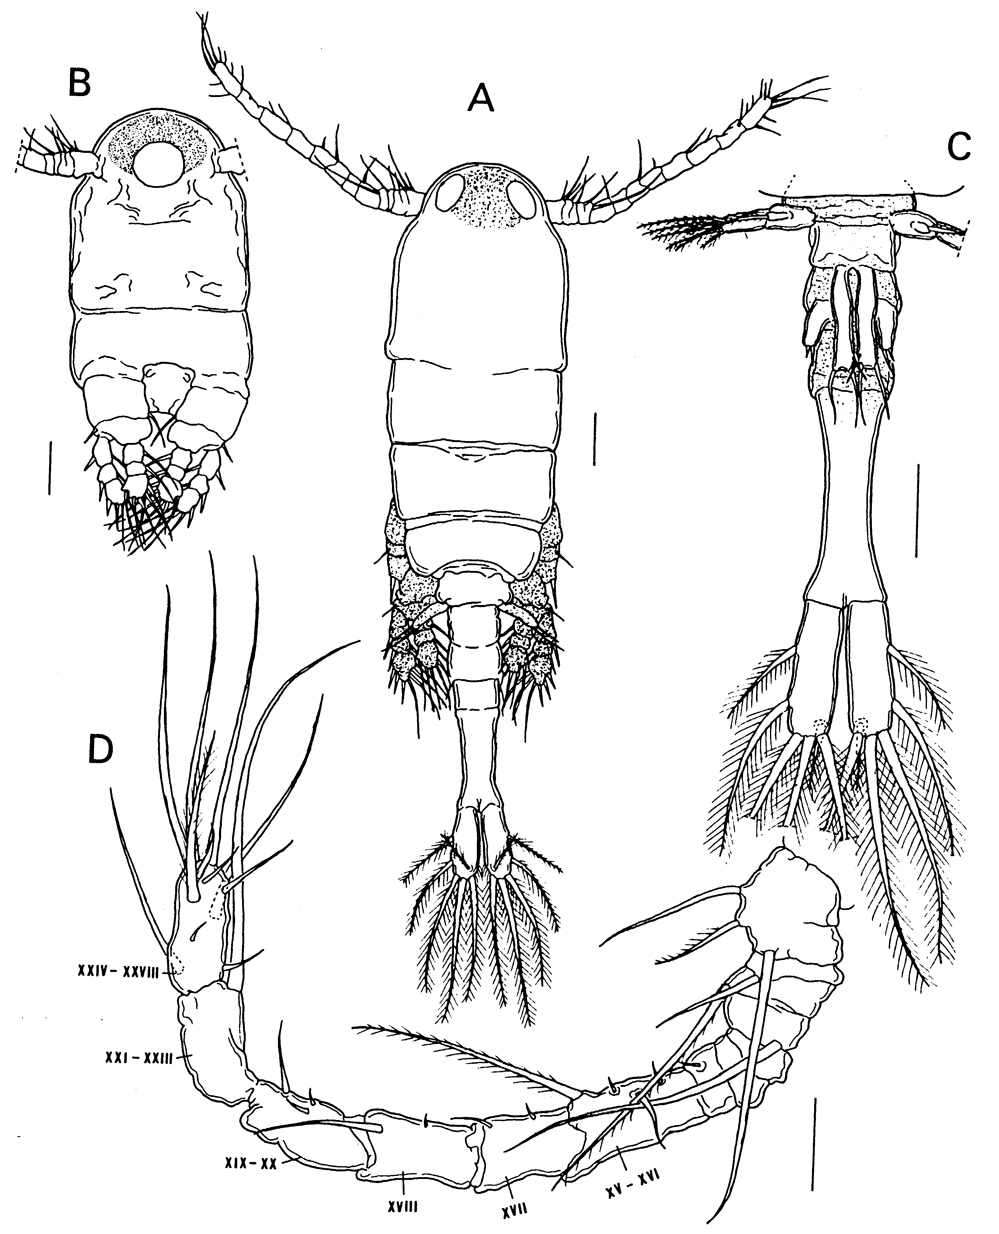 Espce Caribeopsyllus amphiodiae - Planche 4 de figures morphologiques